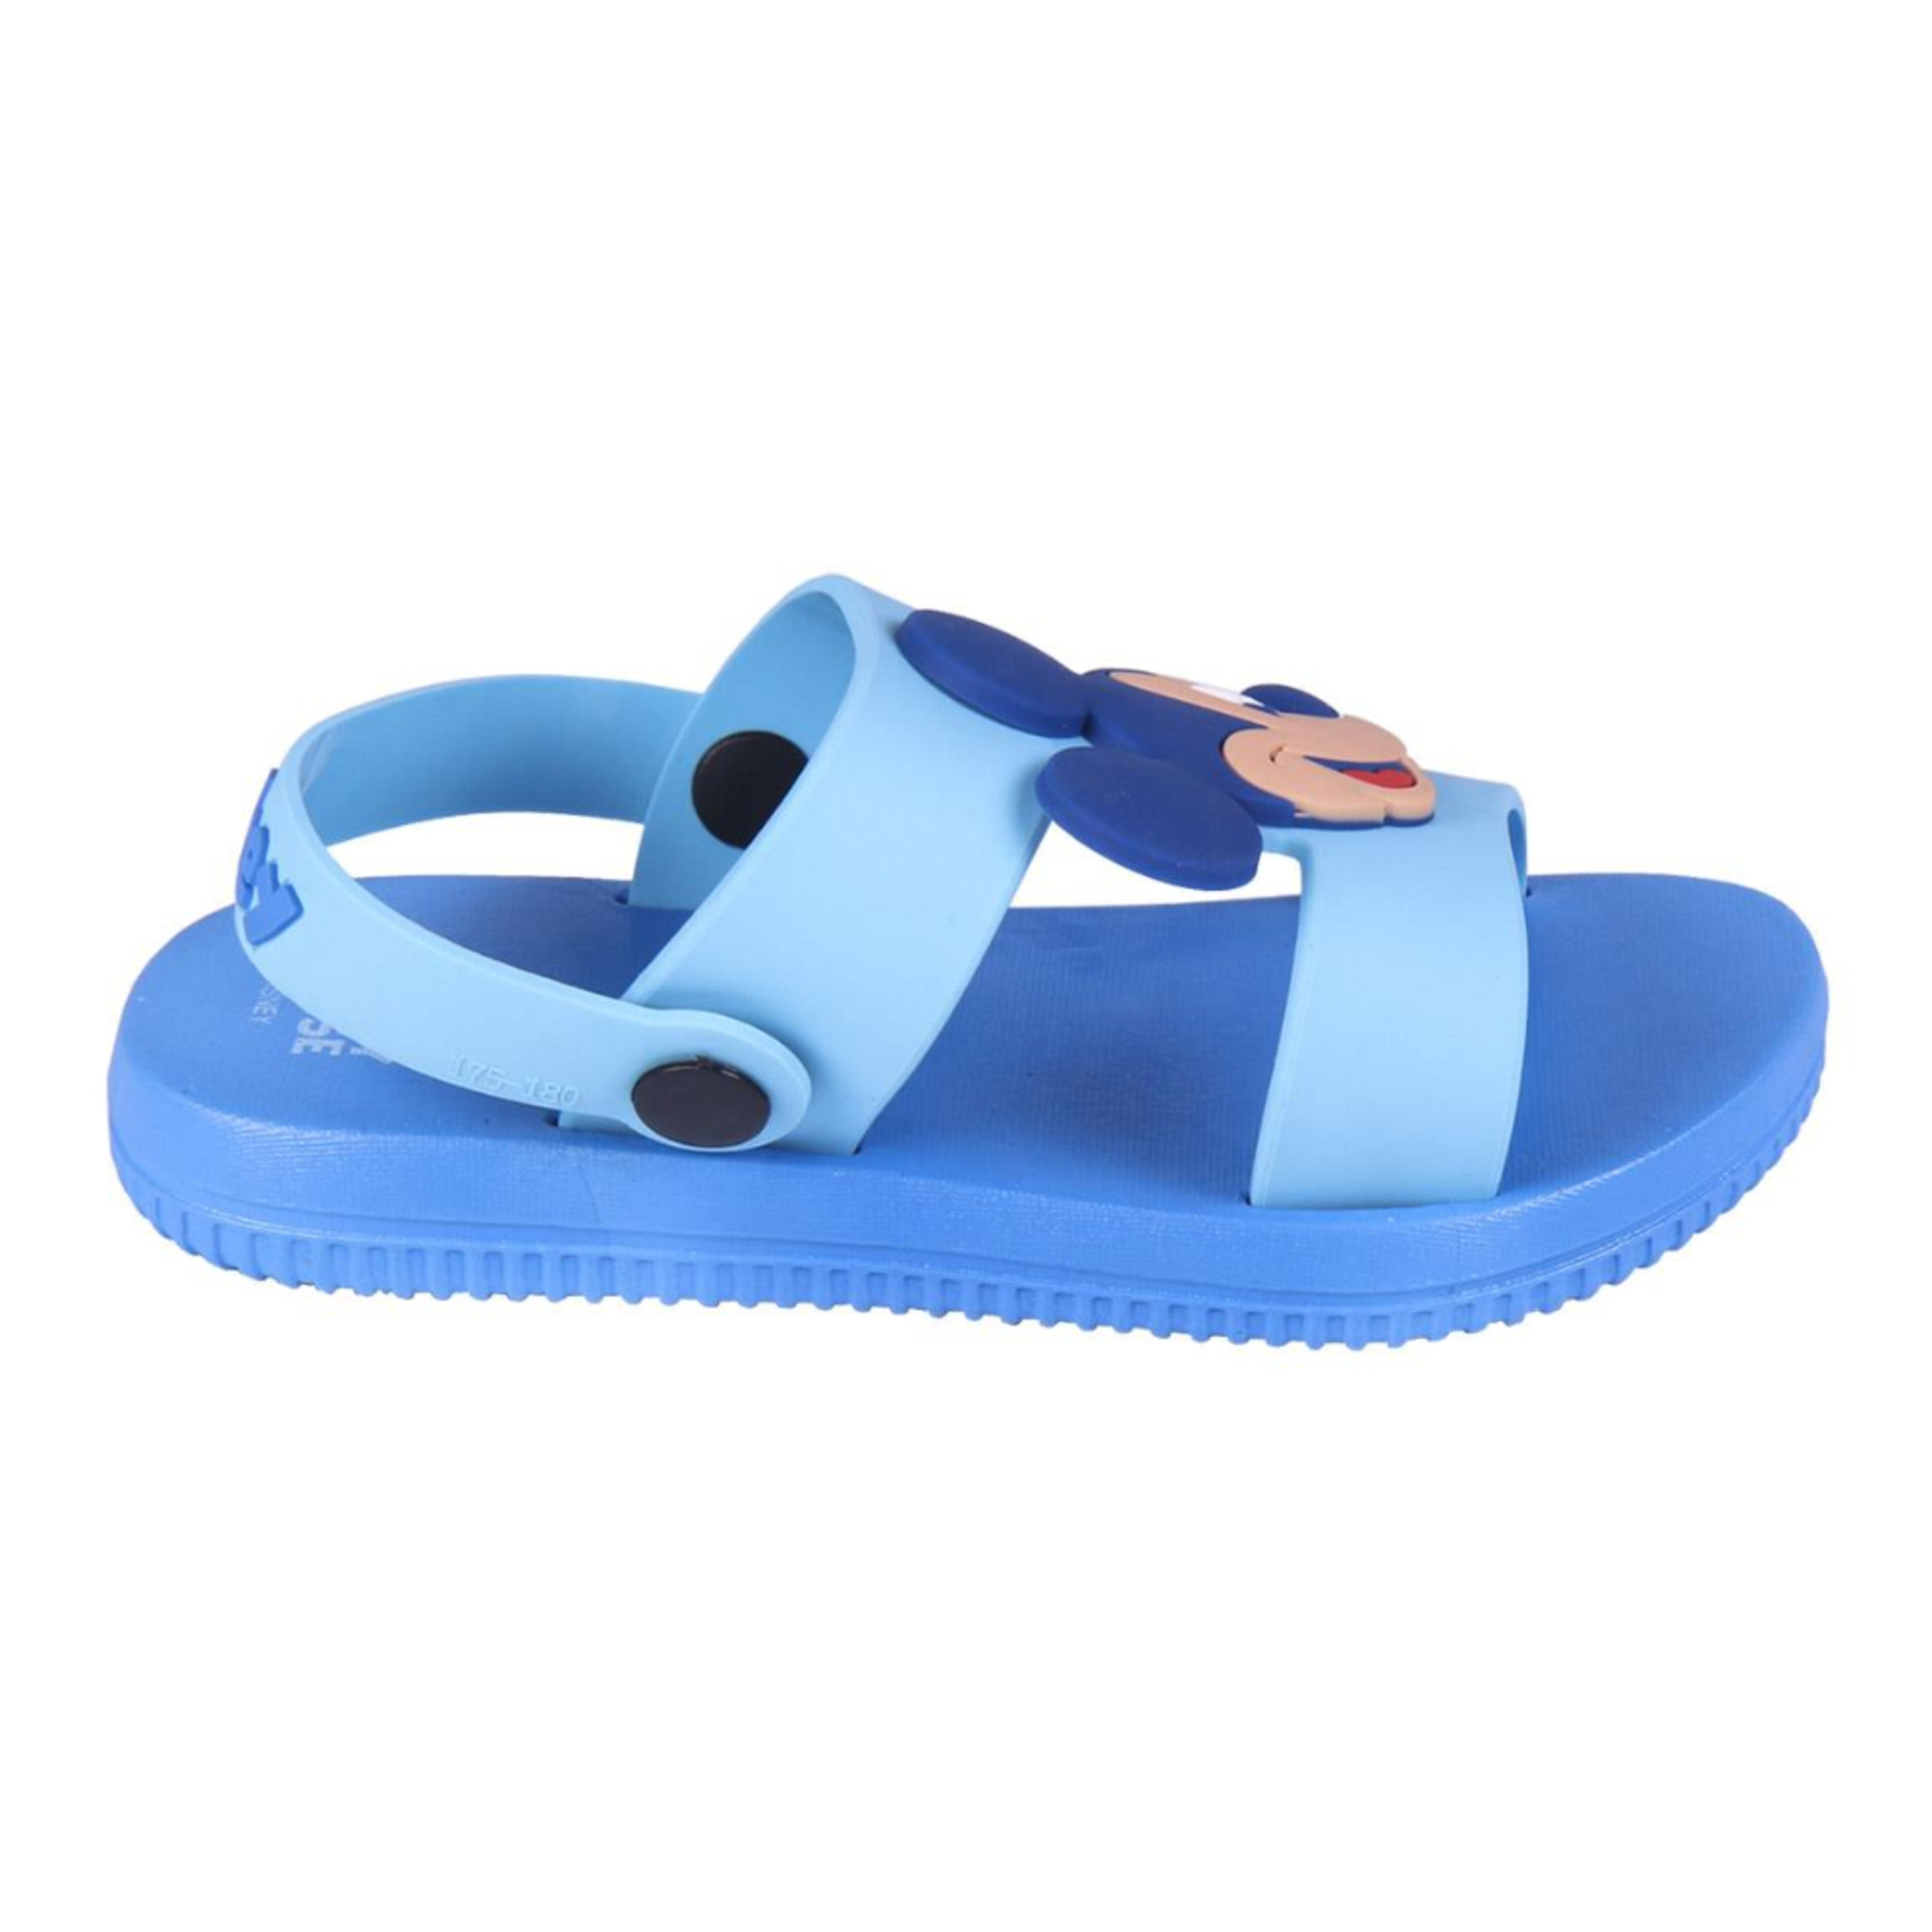 Sandalias Mickey Mouse 64540 - azul - 